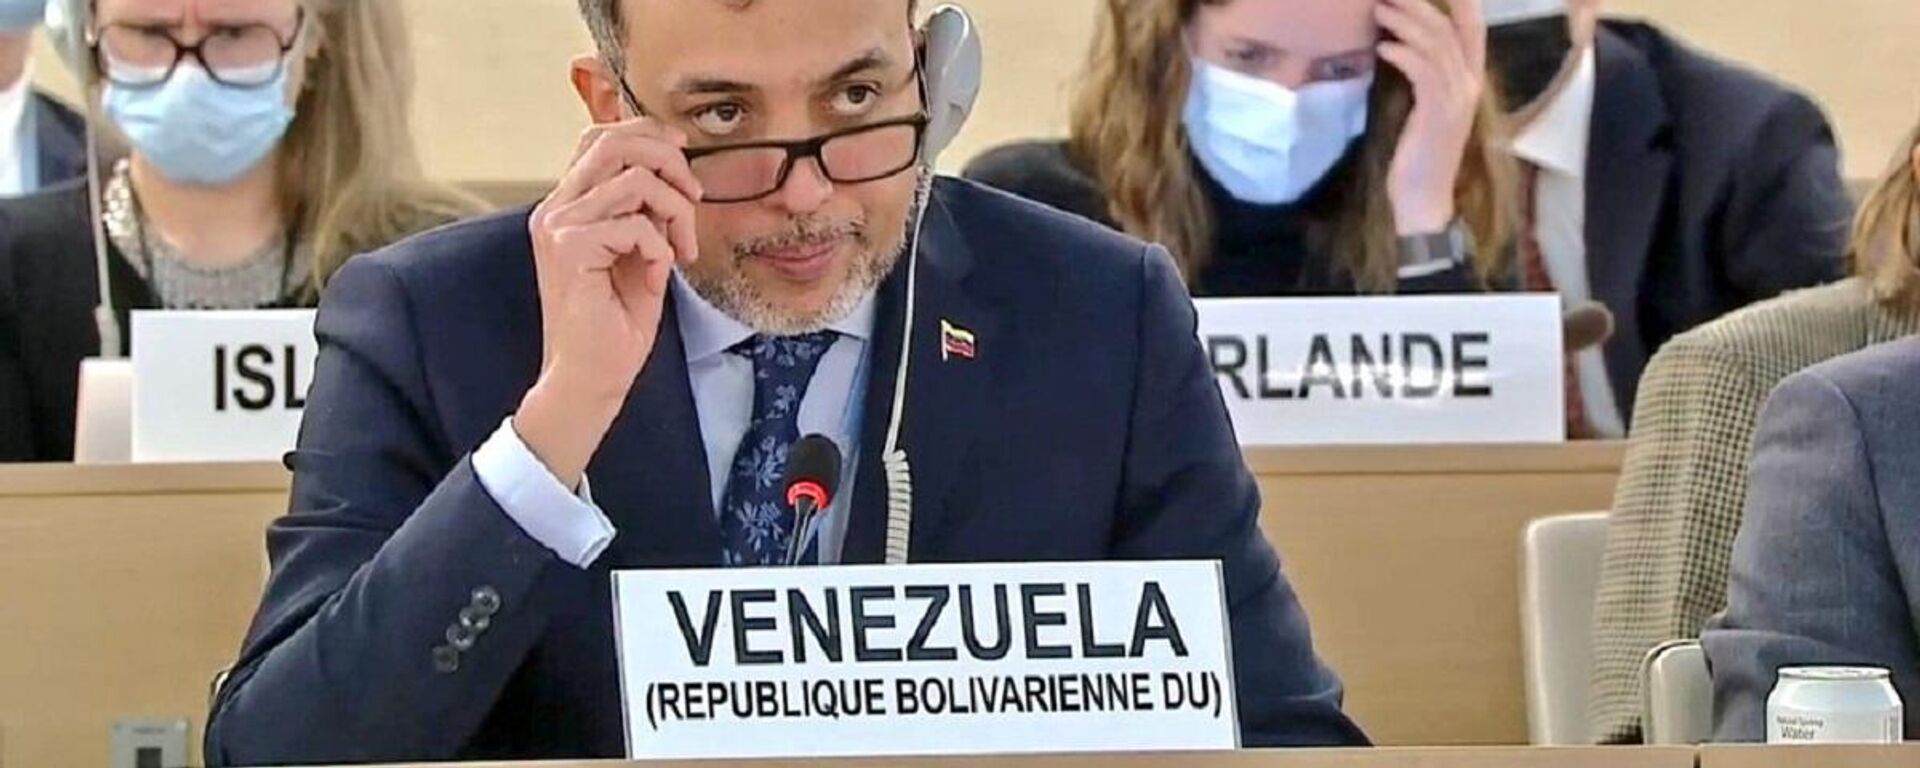 Hector Constant, embajador de Venezuela ante la ONU - Sputnik Mundo, 1920, 03.06.2022